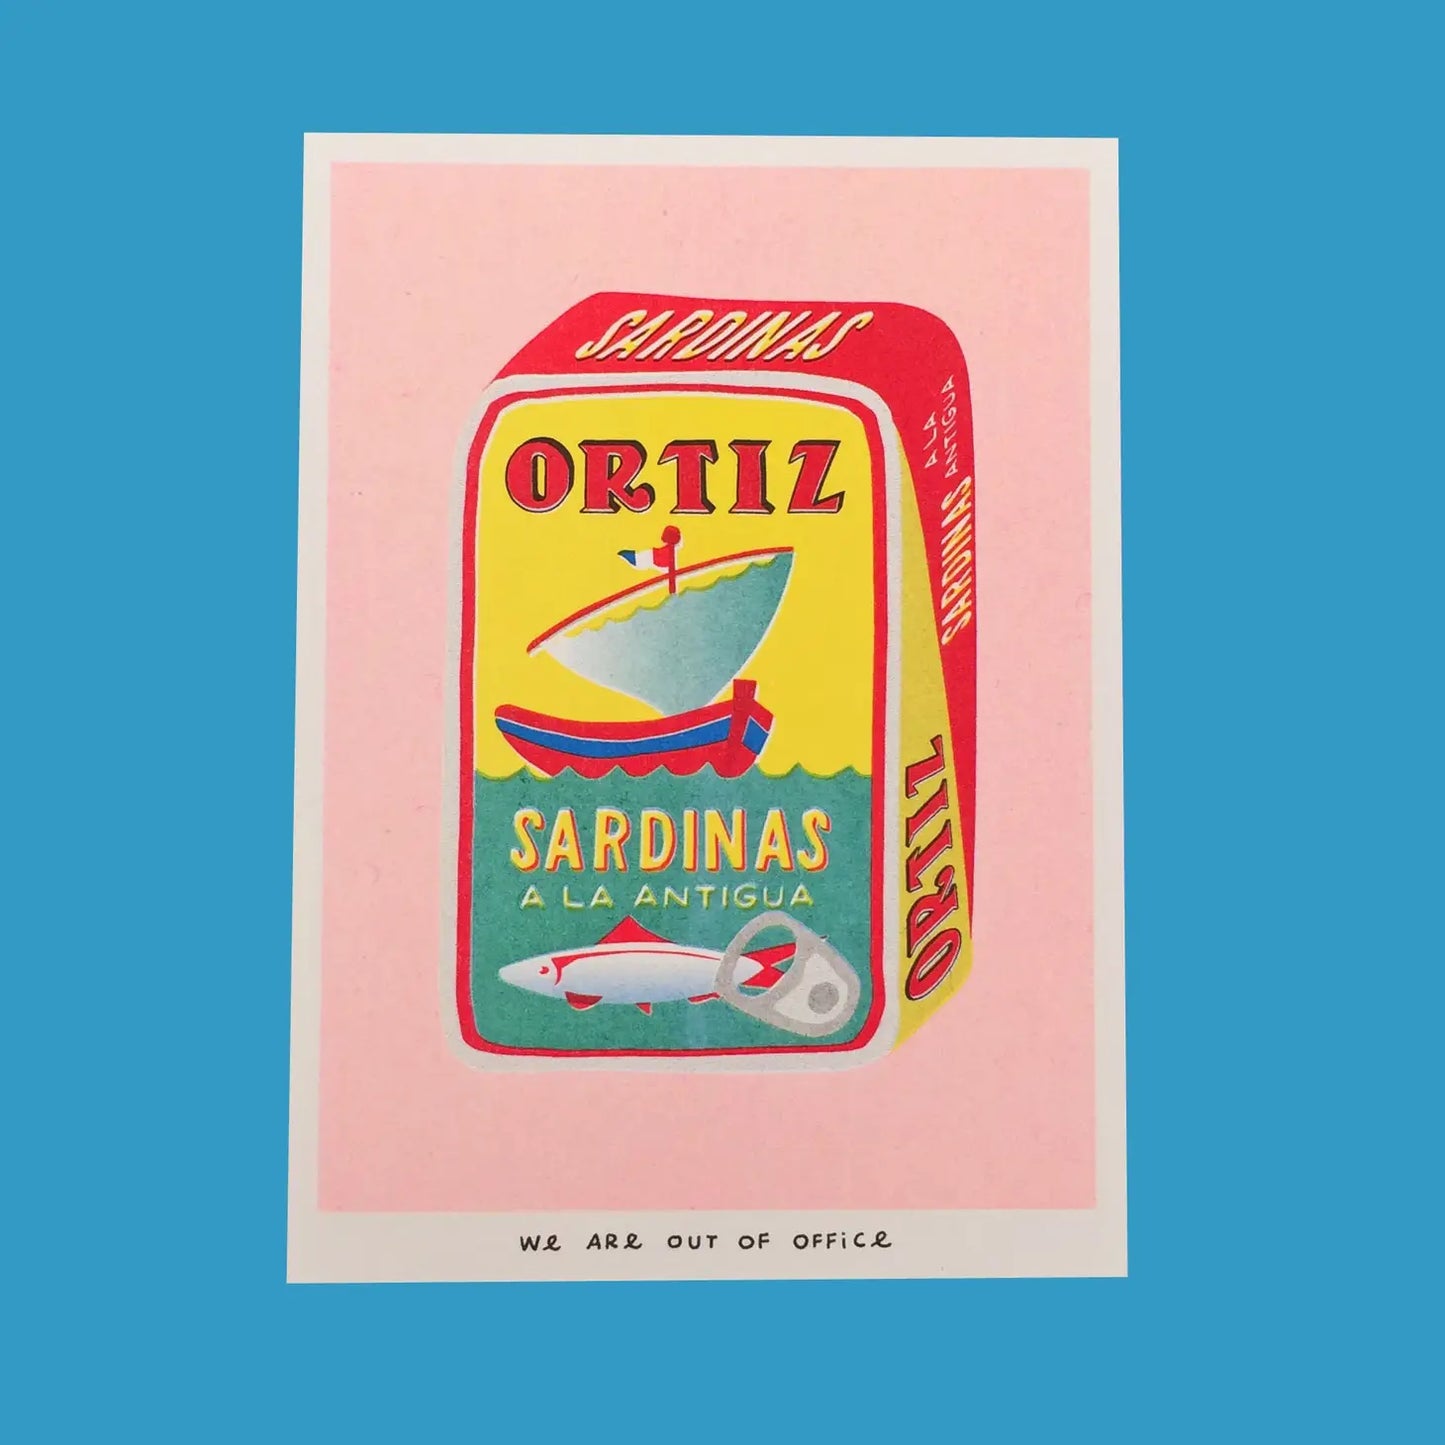 Ortiz sardinas riso print